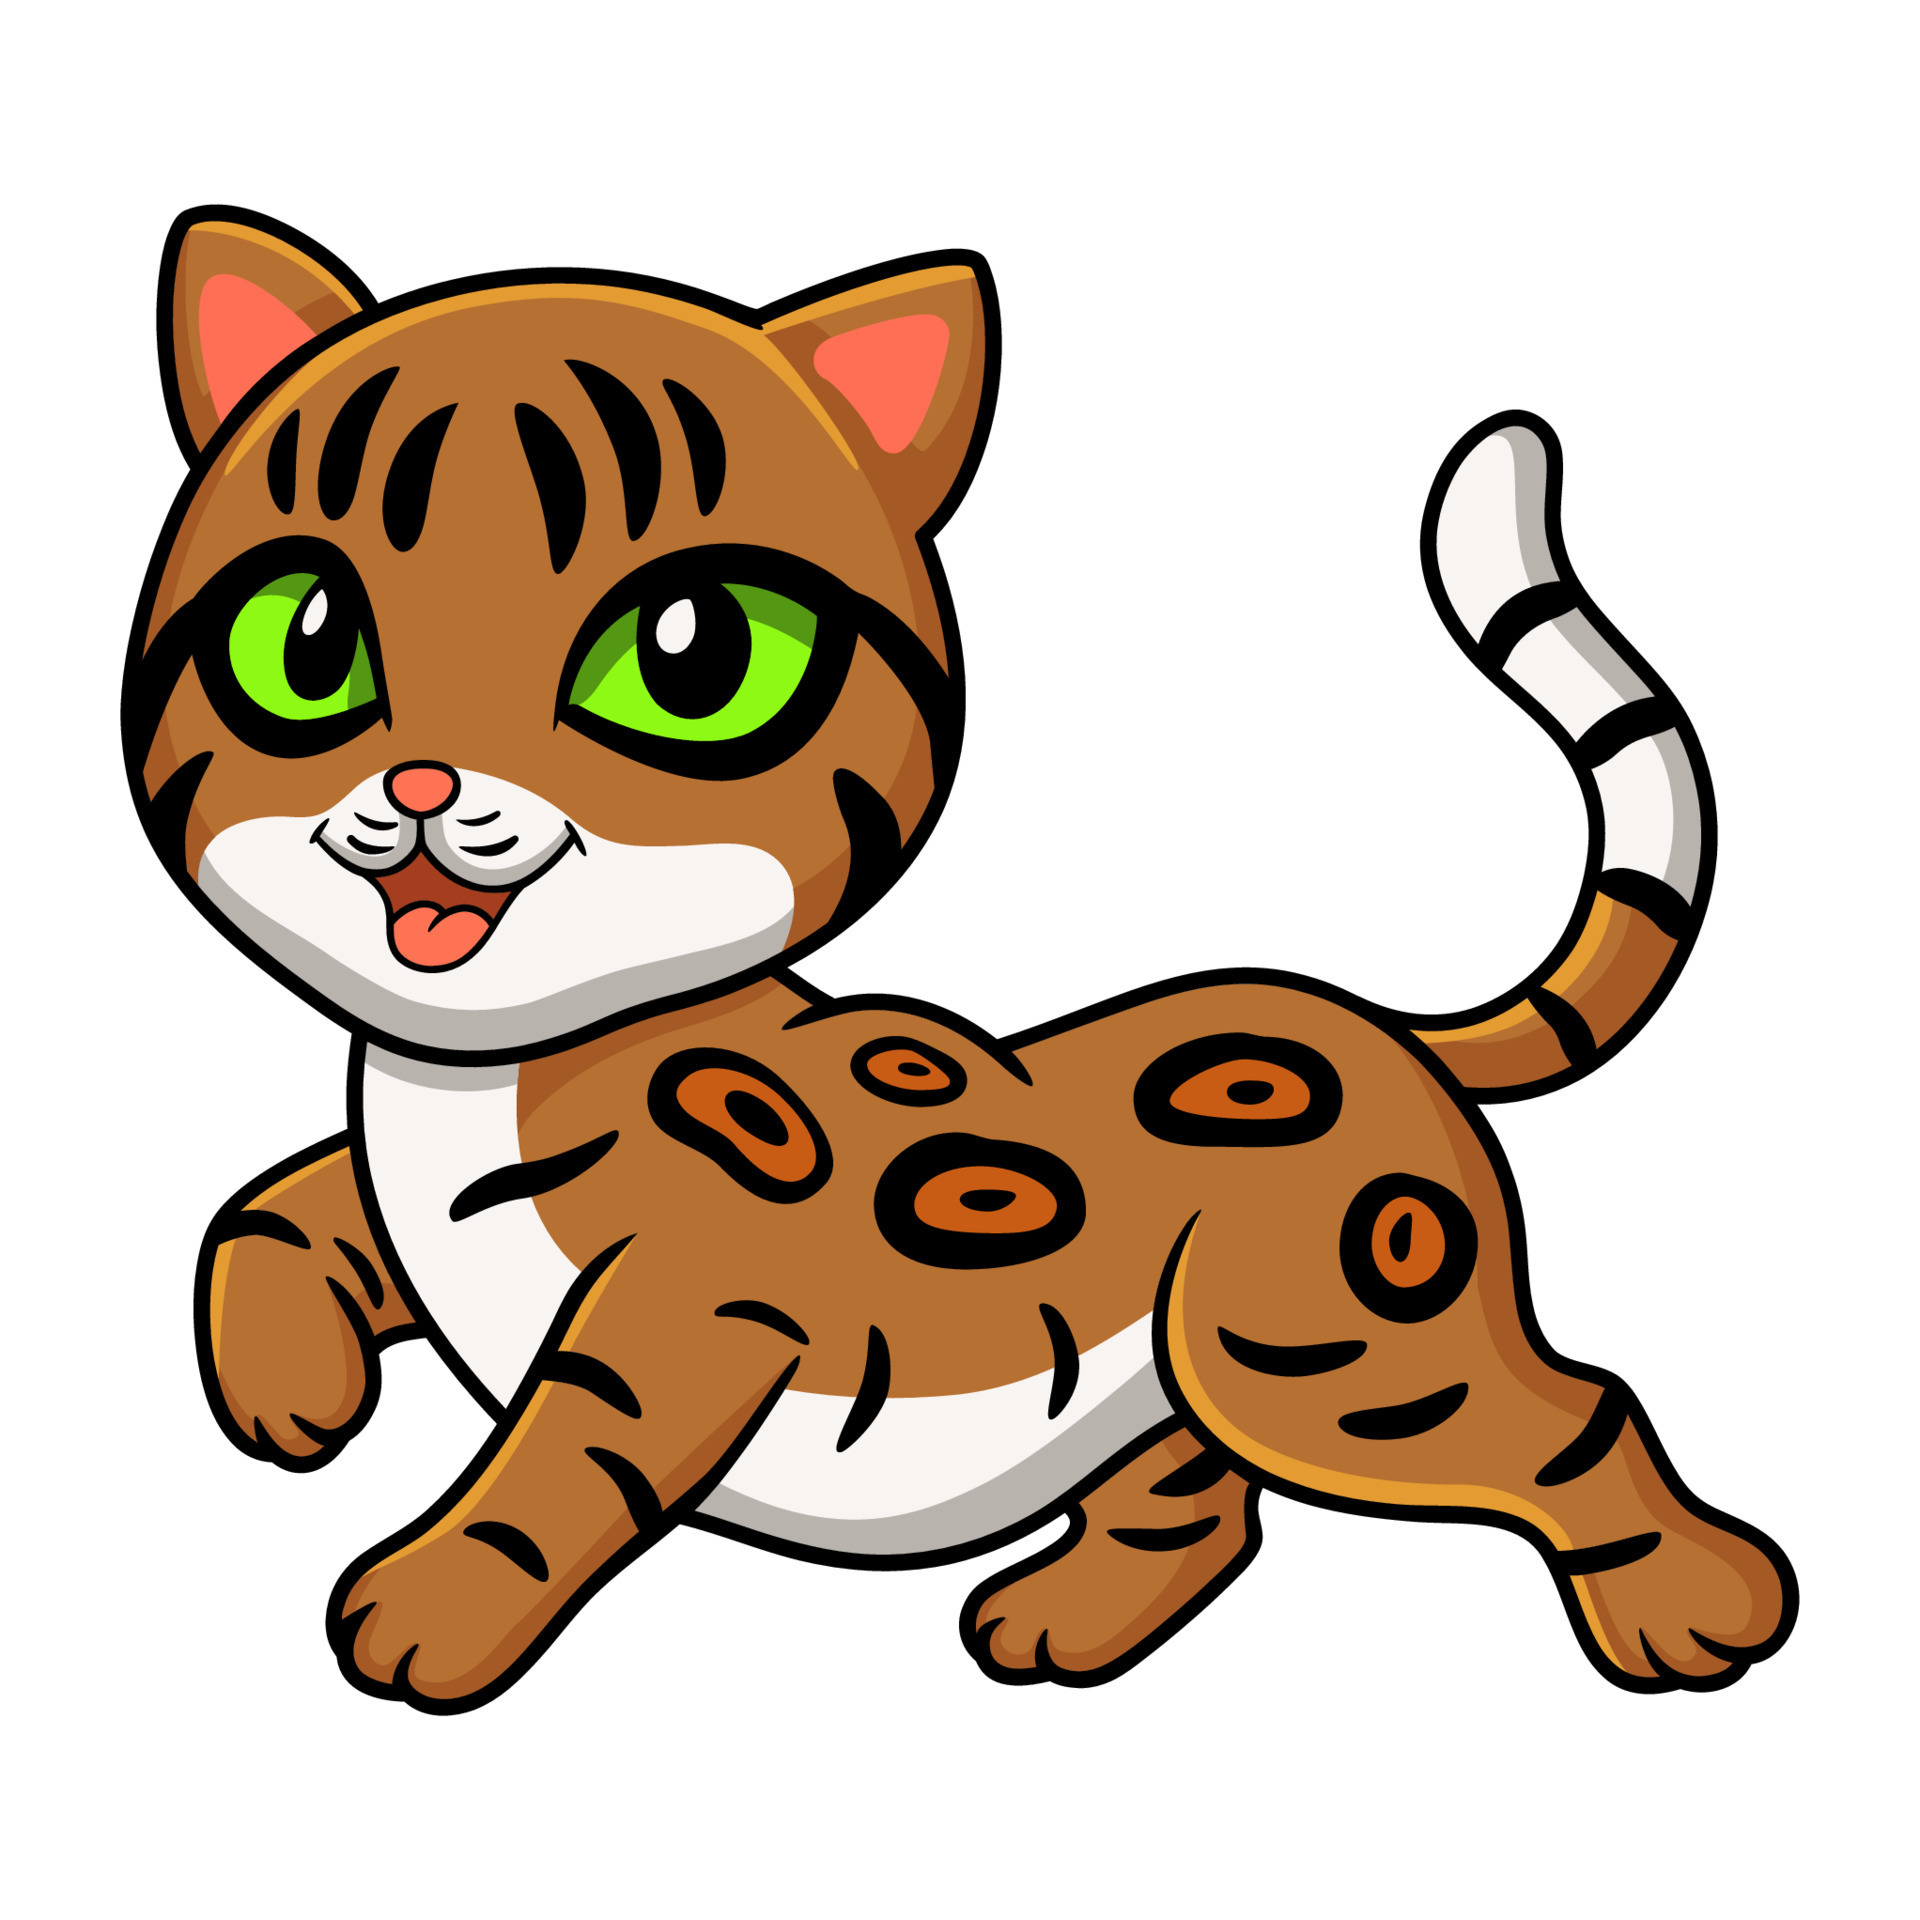 Cute bengal cat cartoon walking 17157498 Vector Art at Vecteezy